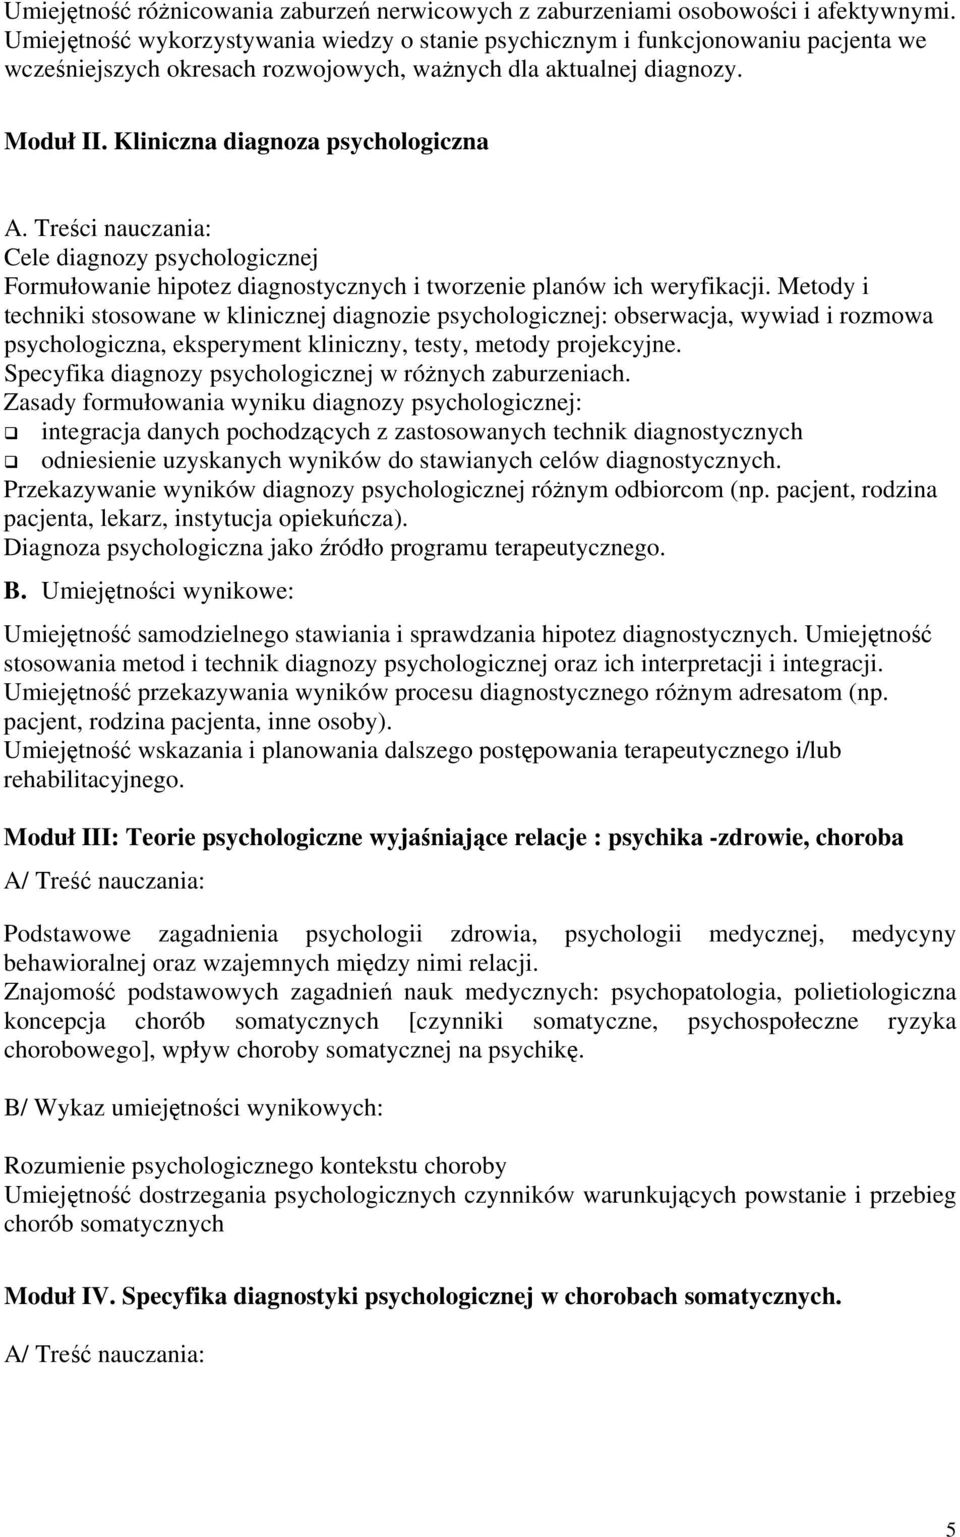 Treści nauczania: Cele diagnozy psychologicznej Formułowanie hipotez diagnostycznych i tworzenie planów ich weryfikacji.